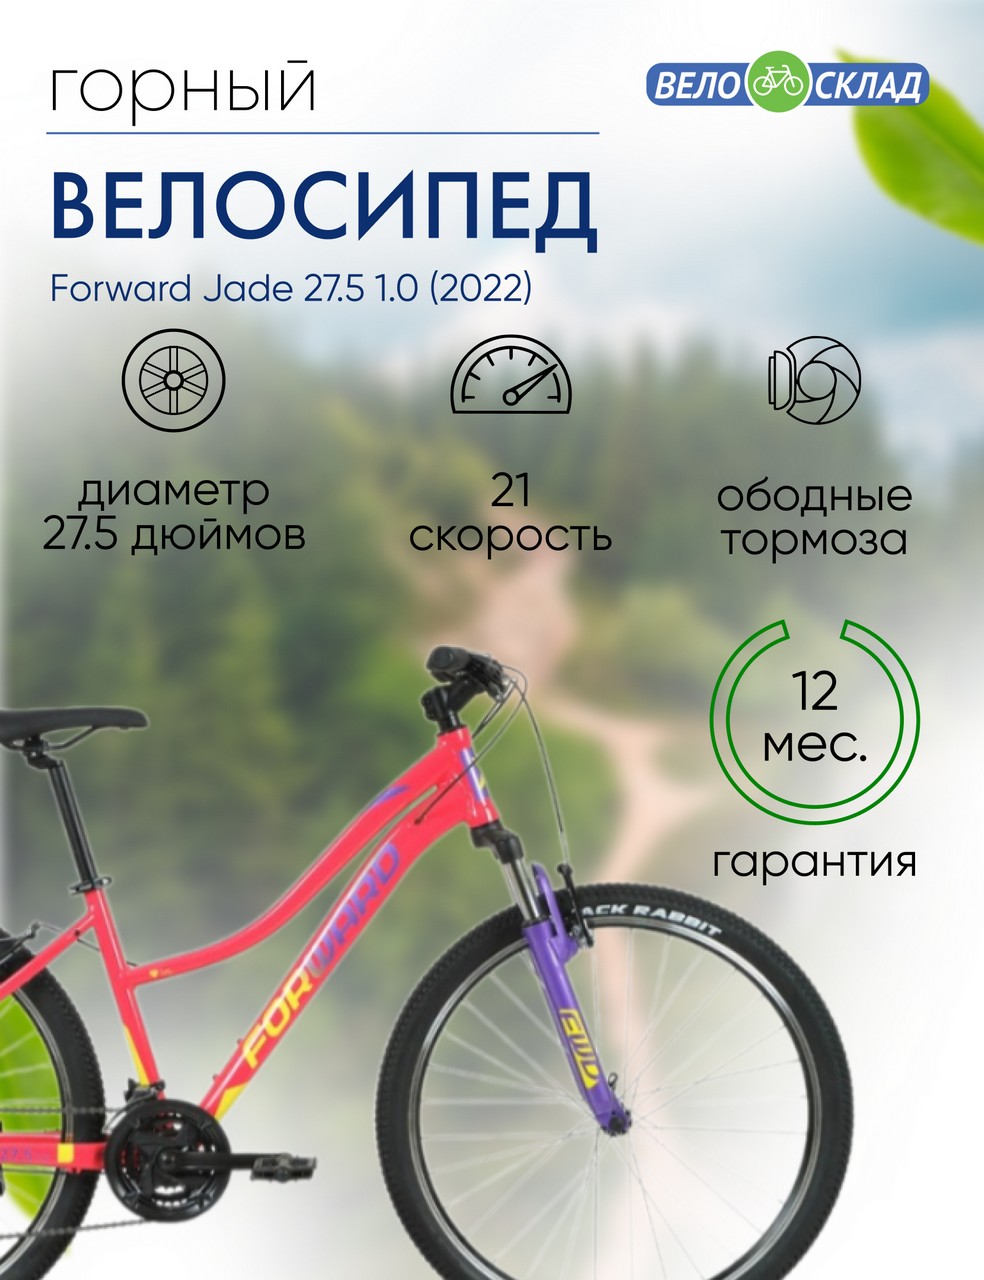 Женский велосипед Forward Jade 27.5 1.0, год 2022, цвет Розовый-Желтый, ростовка 16.5